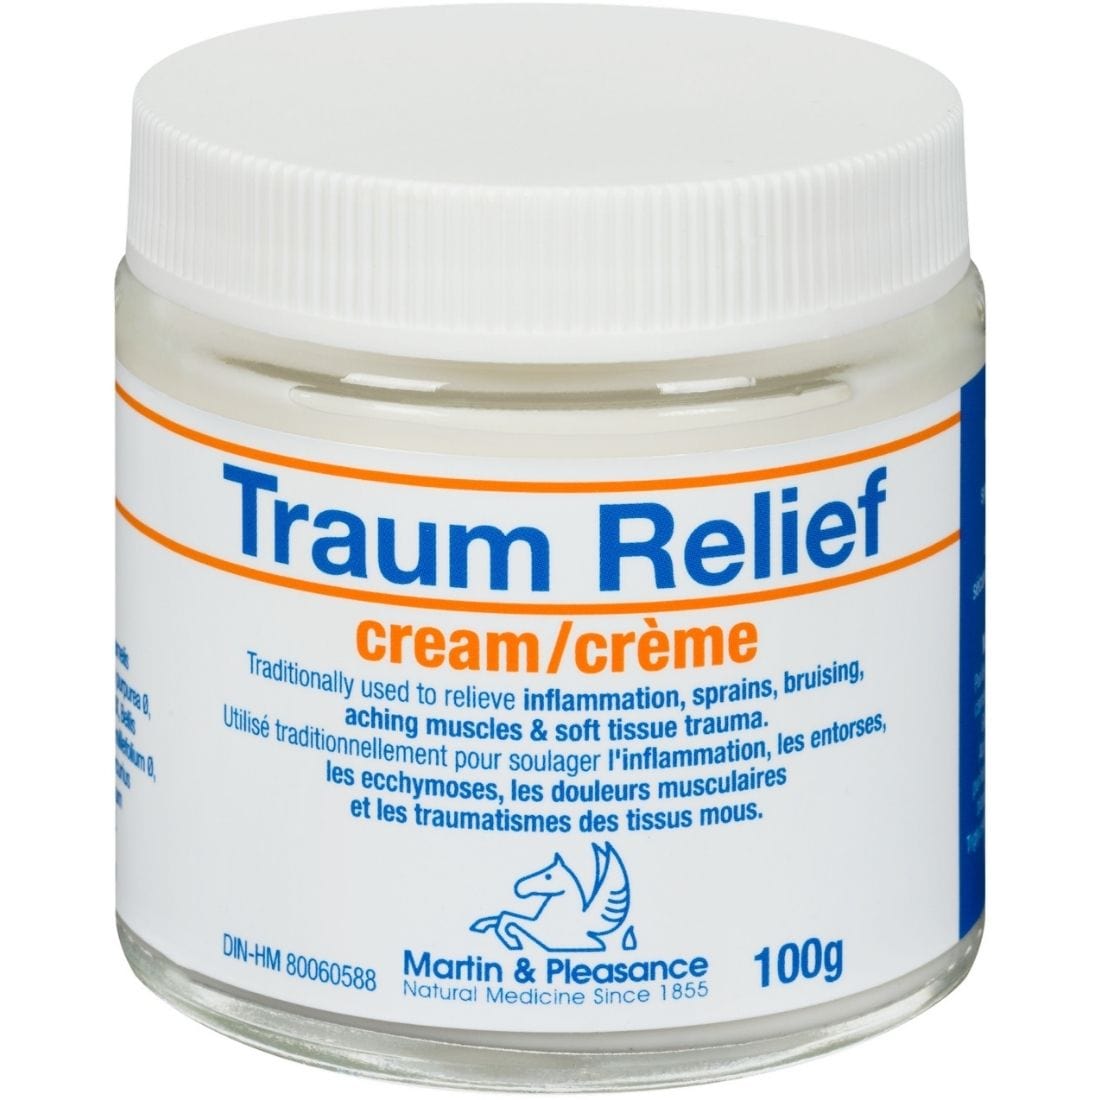 Martin & Pleasance Traum Relief Cream, 100g